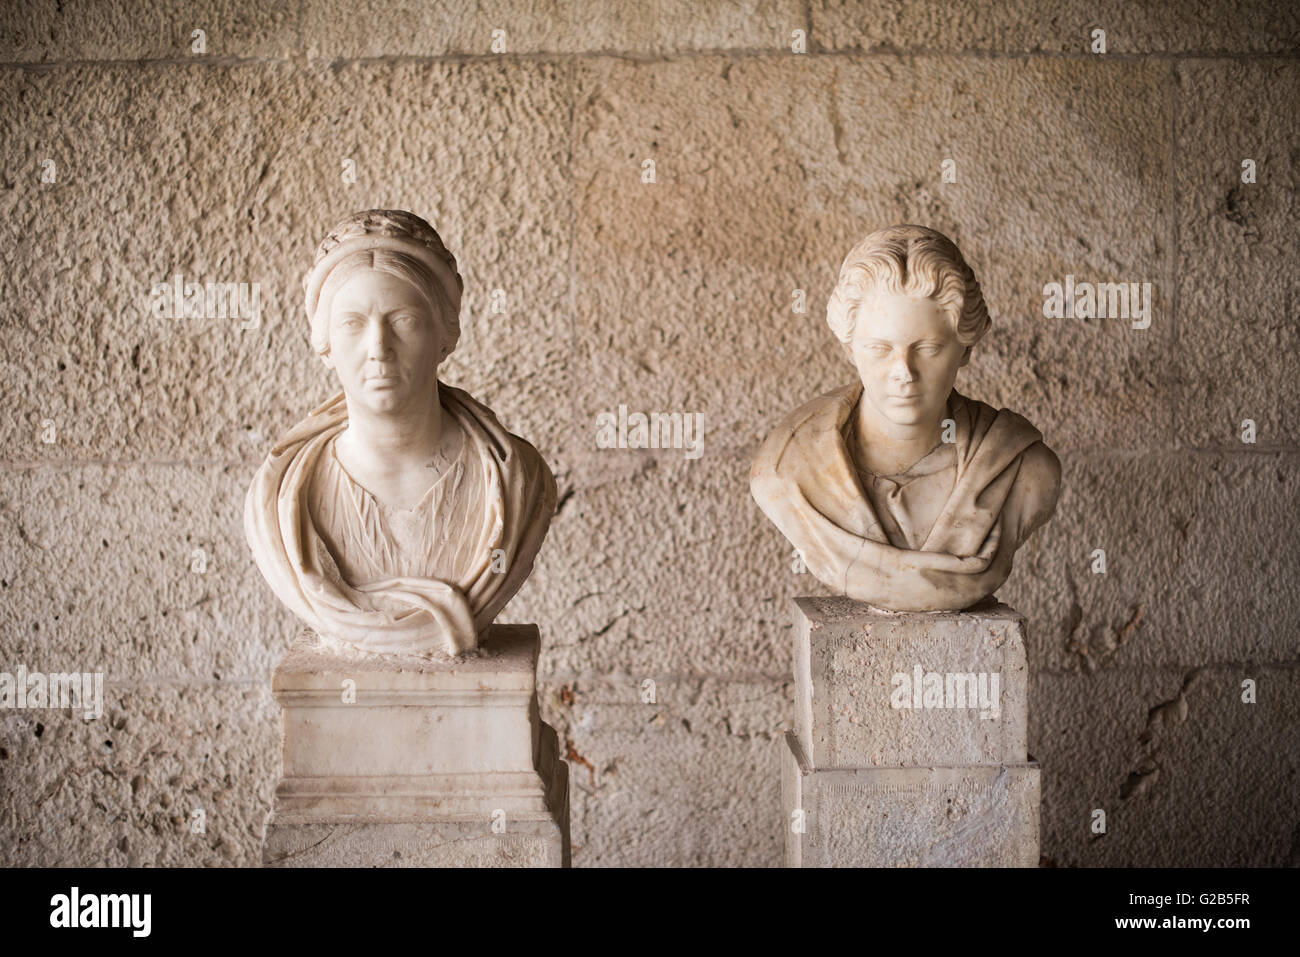 ATHEN, Griechenland - zwei Porträtbüsten römischer Matronen. Der linke stammt aus dem 3. Jahrhundert nach Christus, der rechte aus dem 2. Jahrhundert nach Christus. Die STOA von Attalos ist eine aus den 1950er Jahren stammende Erholung eines langen Pavillons, der ursprünglich um 150 v. Chr. errichtet wurde. Es war Teil der alten Agora (Markt). Es beherbergt heute das Museum der antiken Agora, das Lehm-, Bronze- und Glasobjekte, Skulpturen, Münzen und Aufschriften aus dem 7. Bis 5. Jahrhundert v. Chr. sowie Töpferwaren der Zeit der byzantinische Zeit und der türkischen Eroberung umfasst. Stockfoto